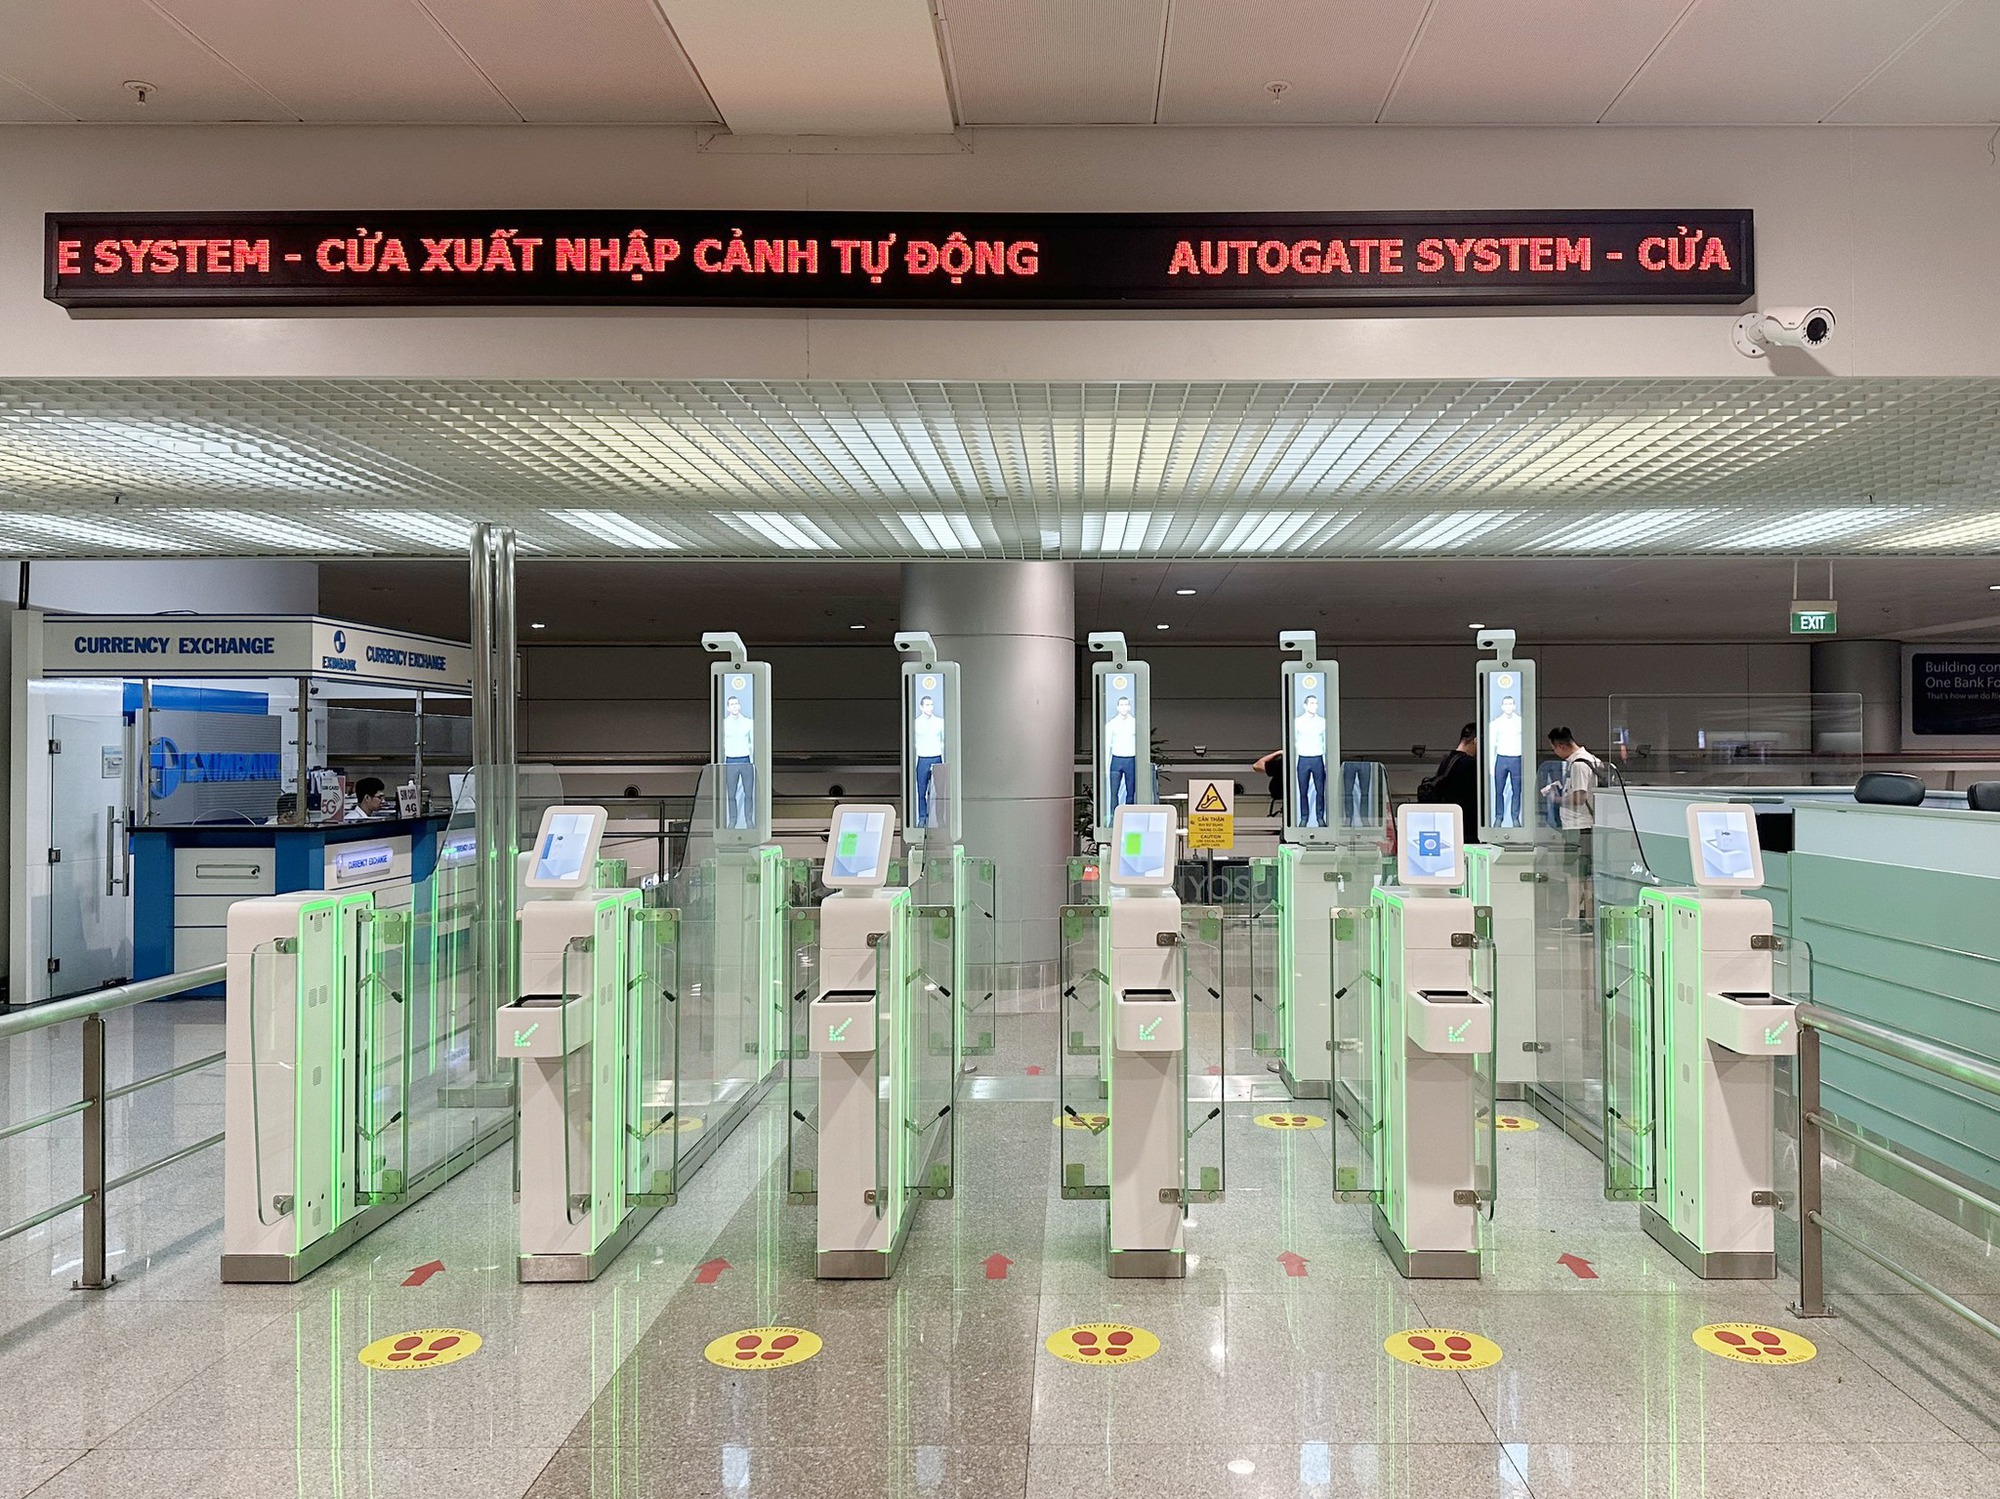 5 sân bay mới áp dụng hệ thống cổng kiểm soát tự động, hành khách khi xuất/nhập cảnh cần lưu ý gì? - Ảnh 1.